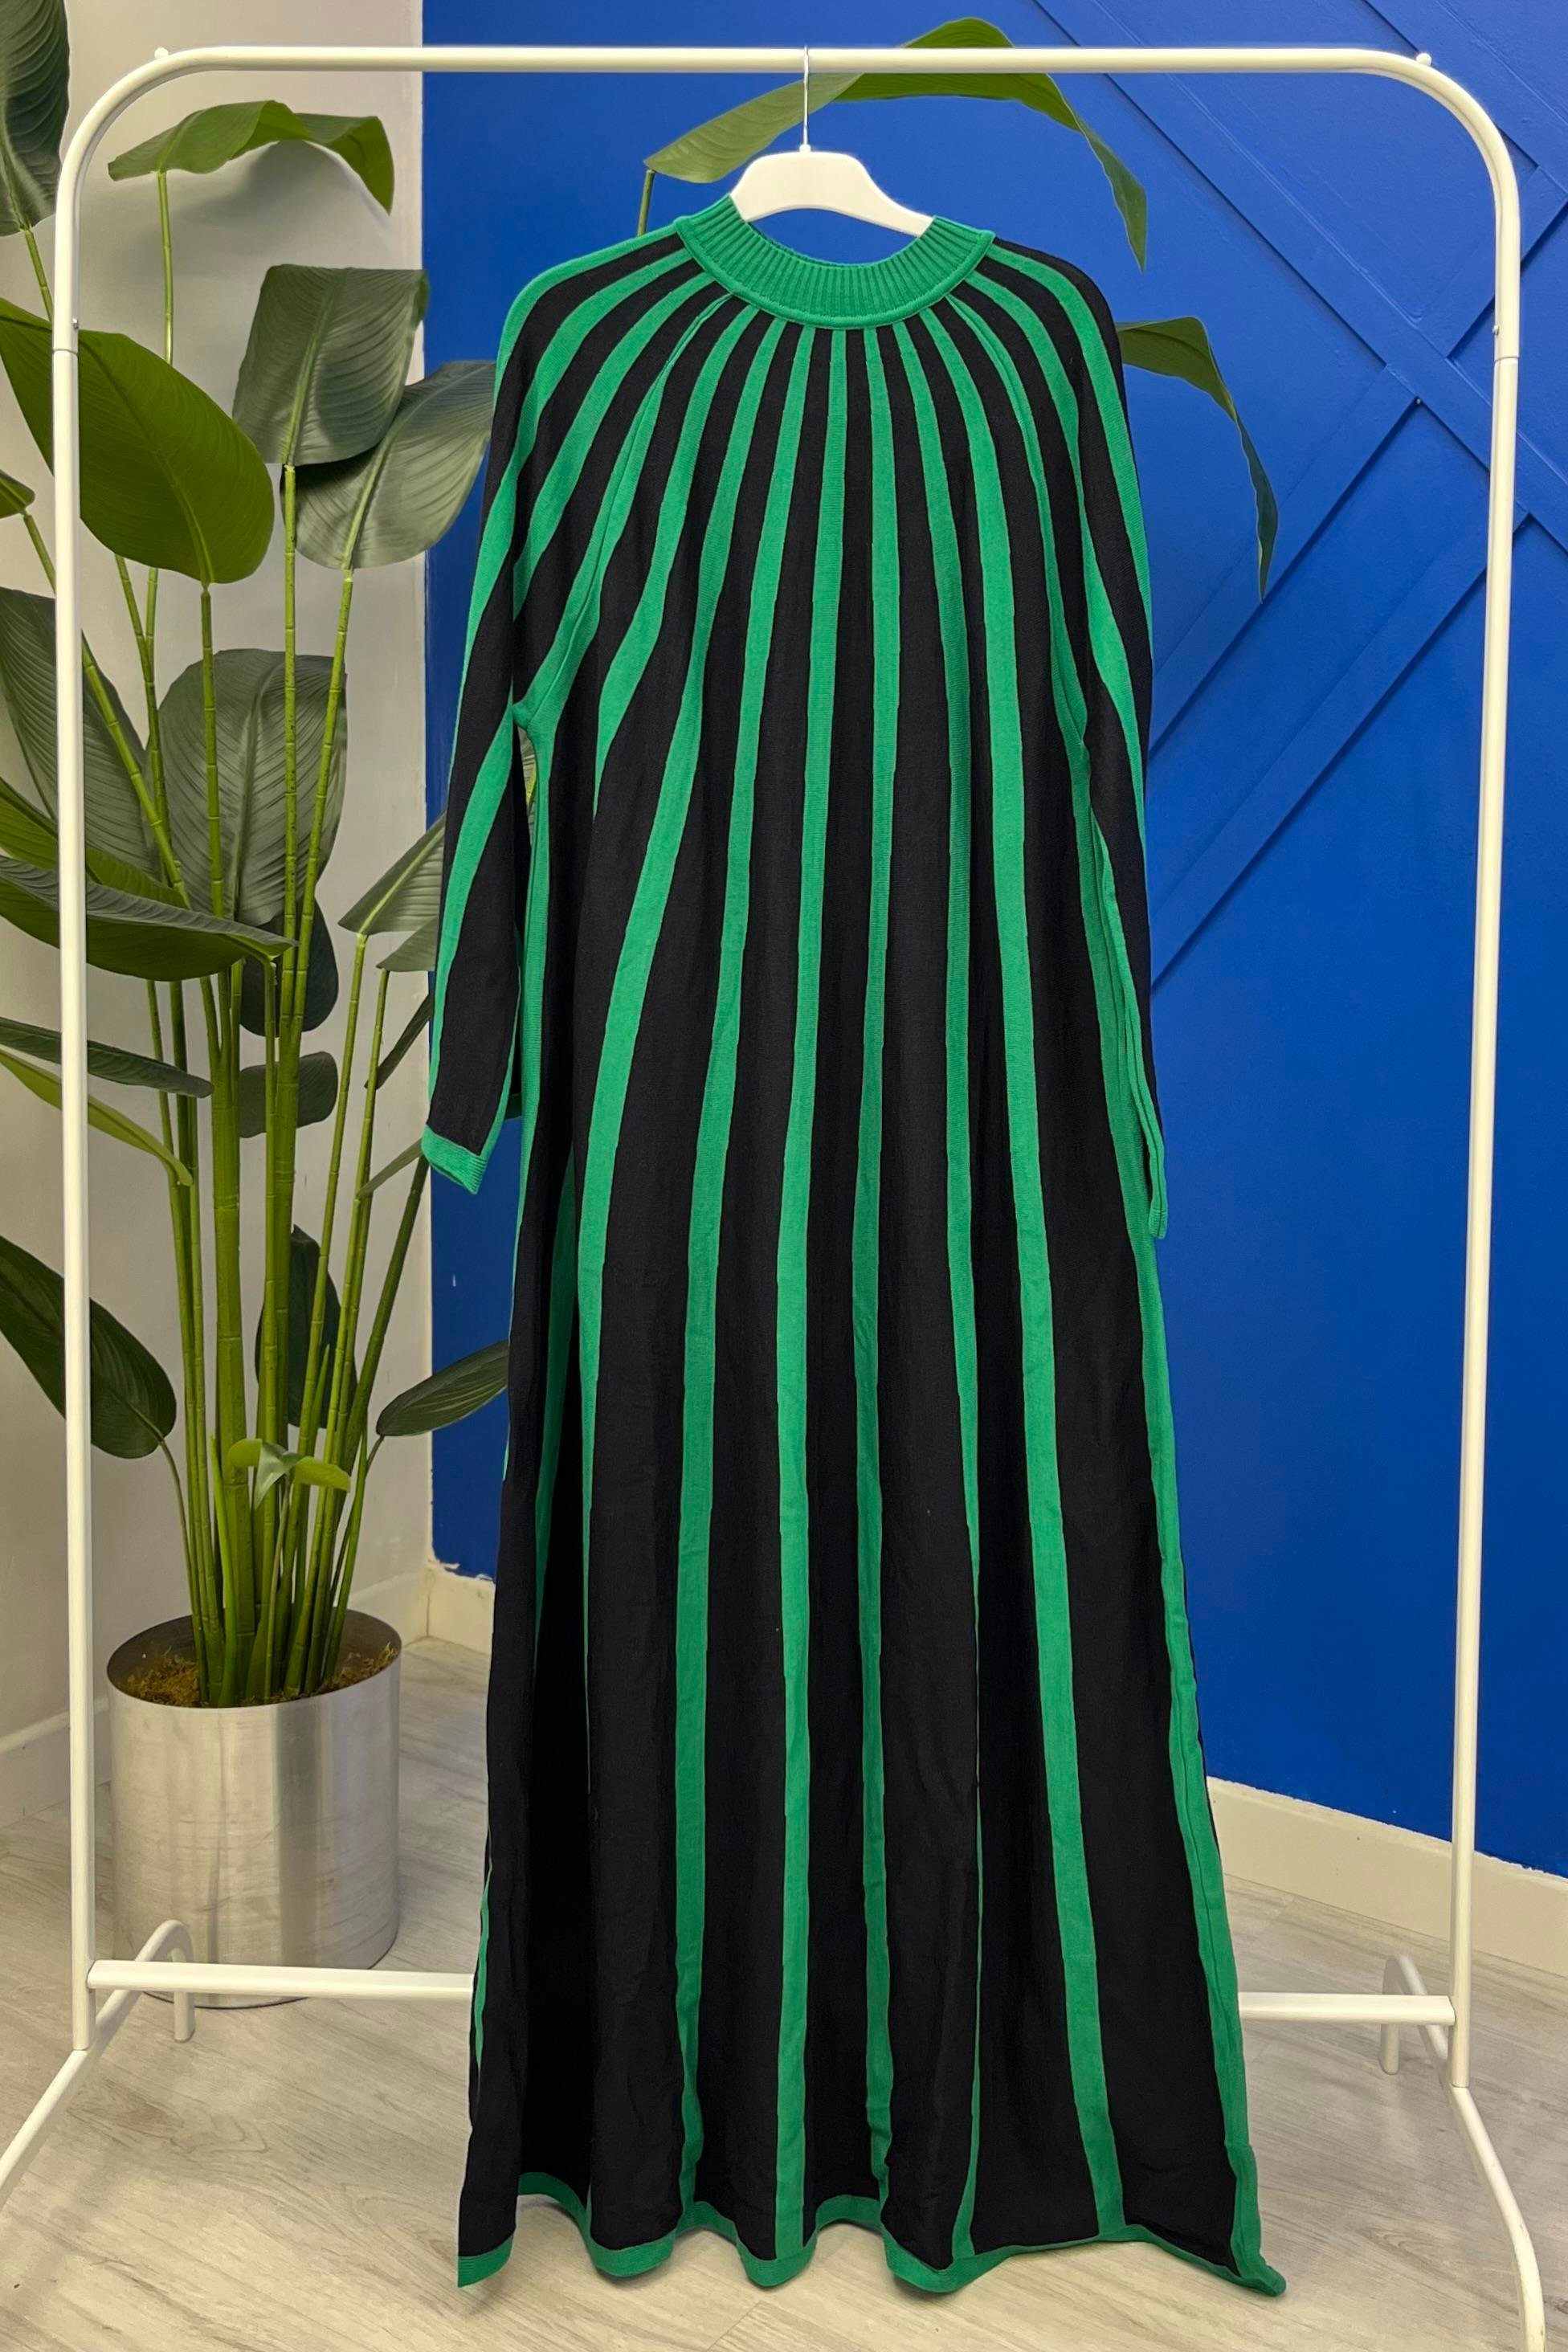 İnvee 6889 Çift Renk Detaylı Triko Elbise - Lacivert - Yeşil Bilen Giyim